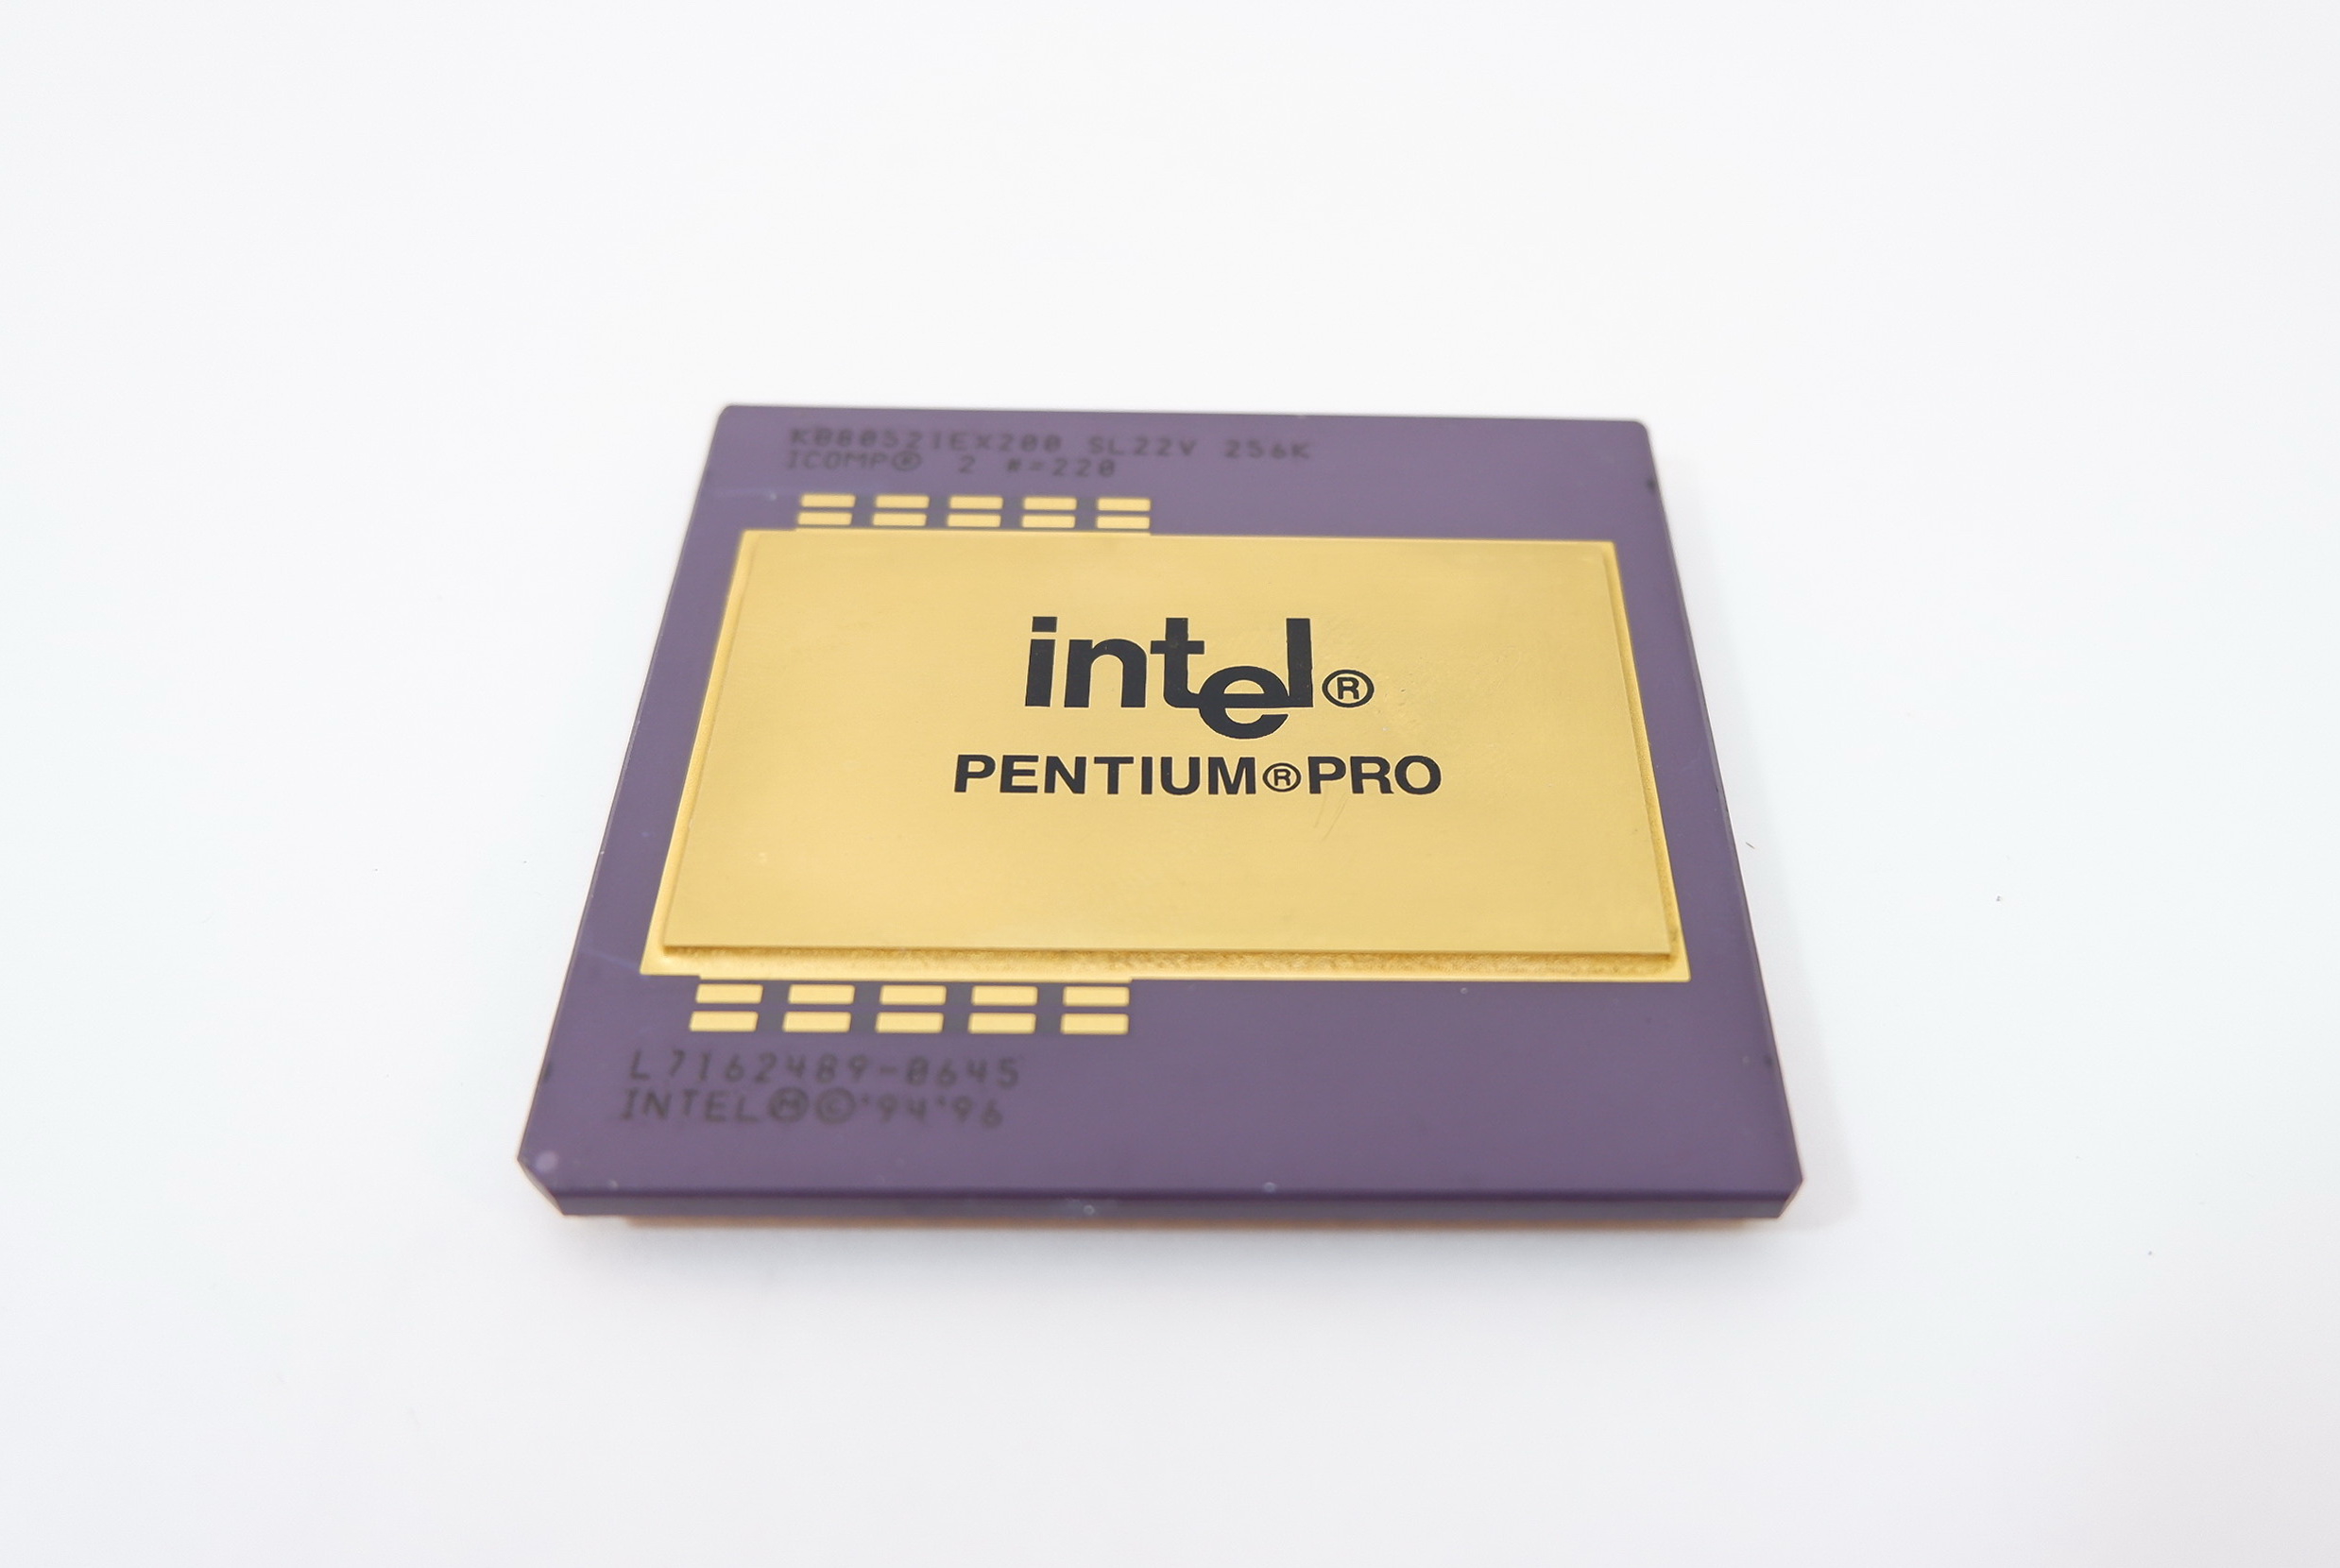 Intel pentium pro viofo com